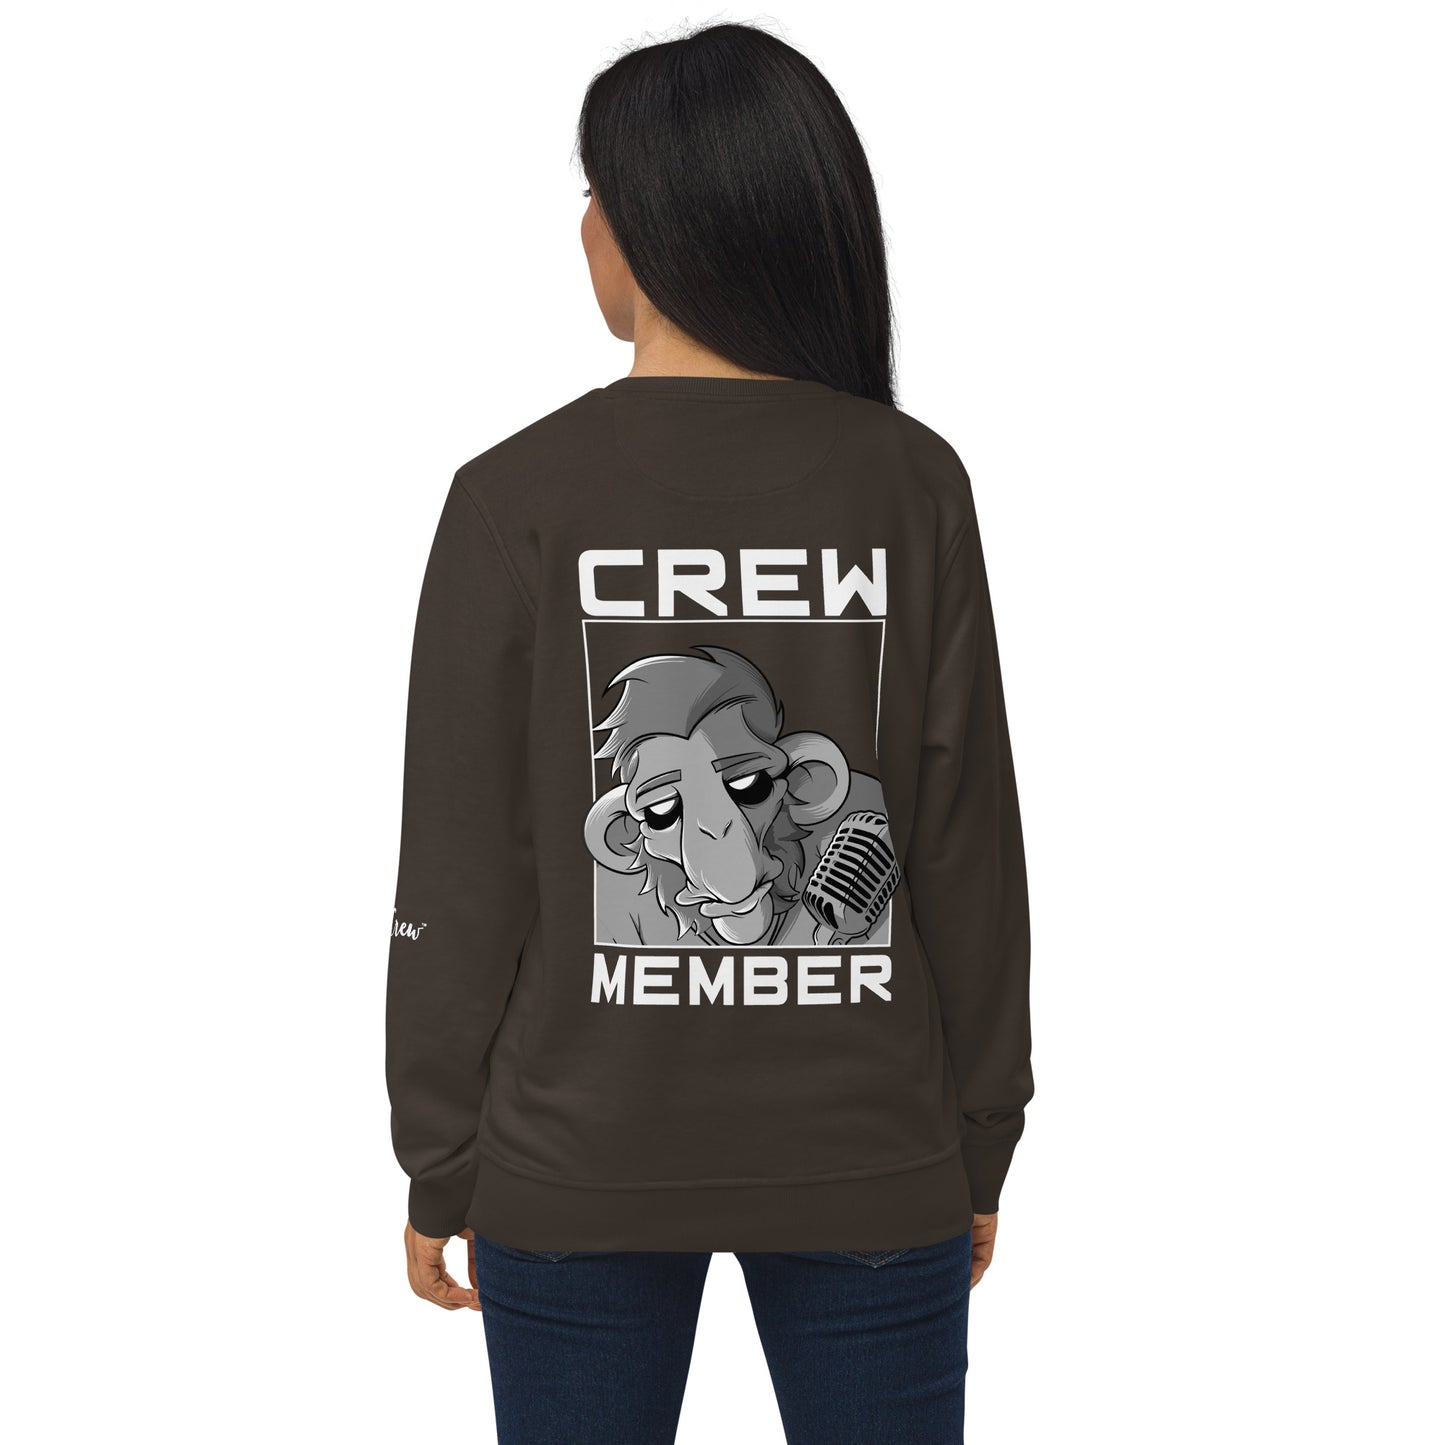 The Gig Crew Unisex Sweatshirt